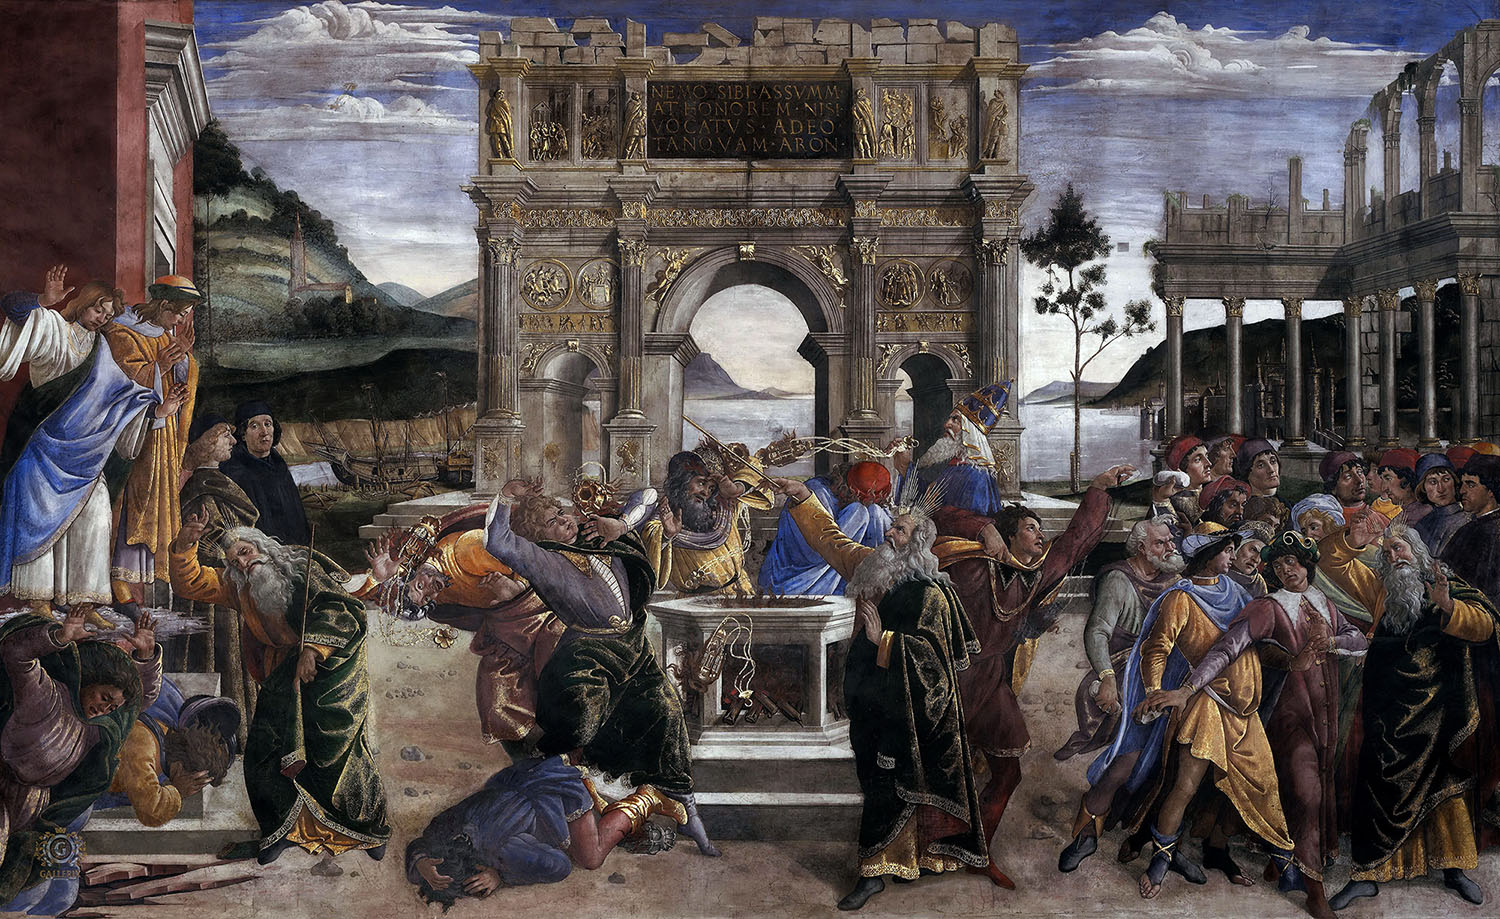 Сандро Боттичелли. "Наказание Корея". 1481-1482. Фреска. Сикстинская капелла. Музеи Ватикана, Ватикан.